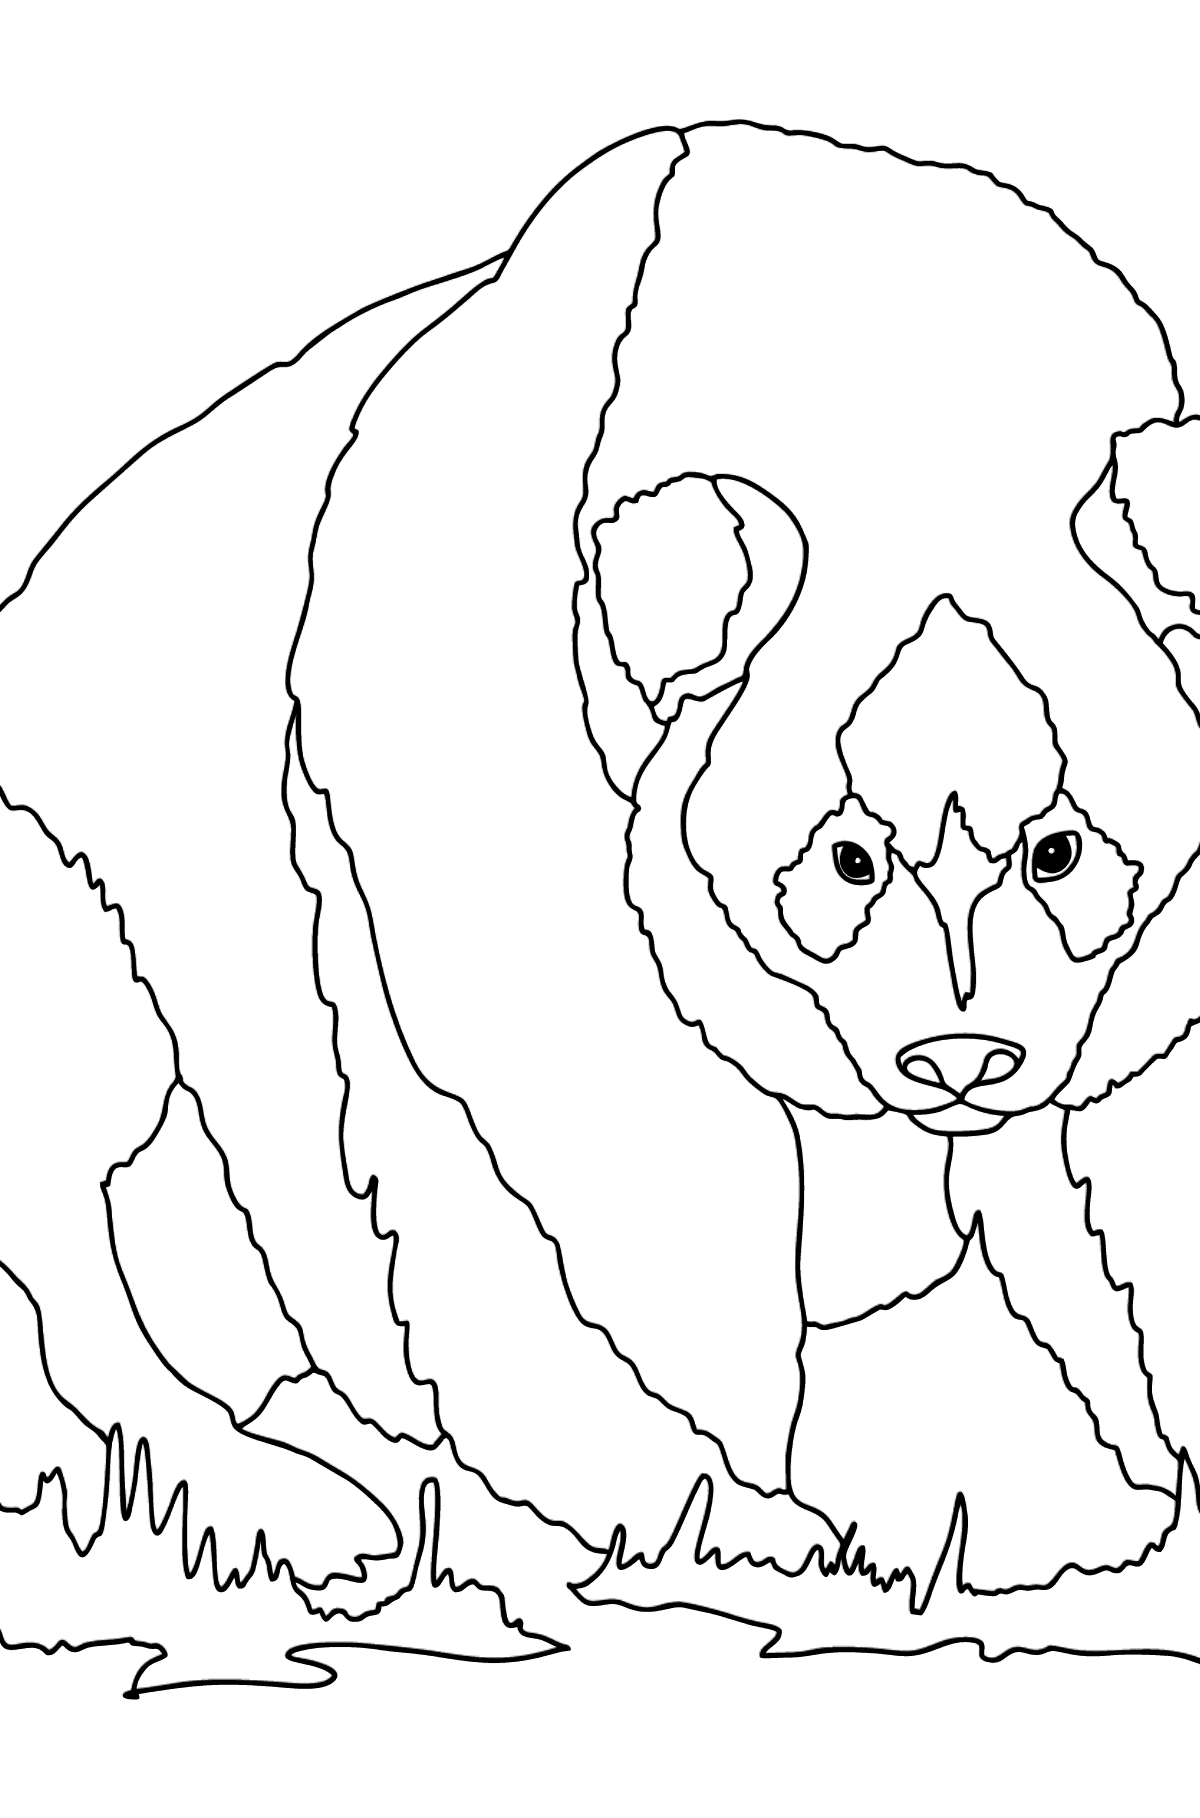 Desenho de panda gentil para colorir (difícil) - Imagens para Colorir para Crianças